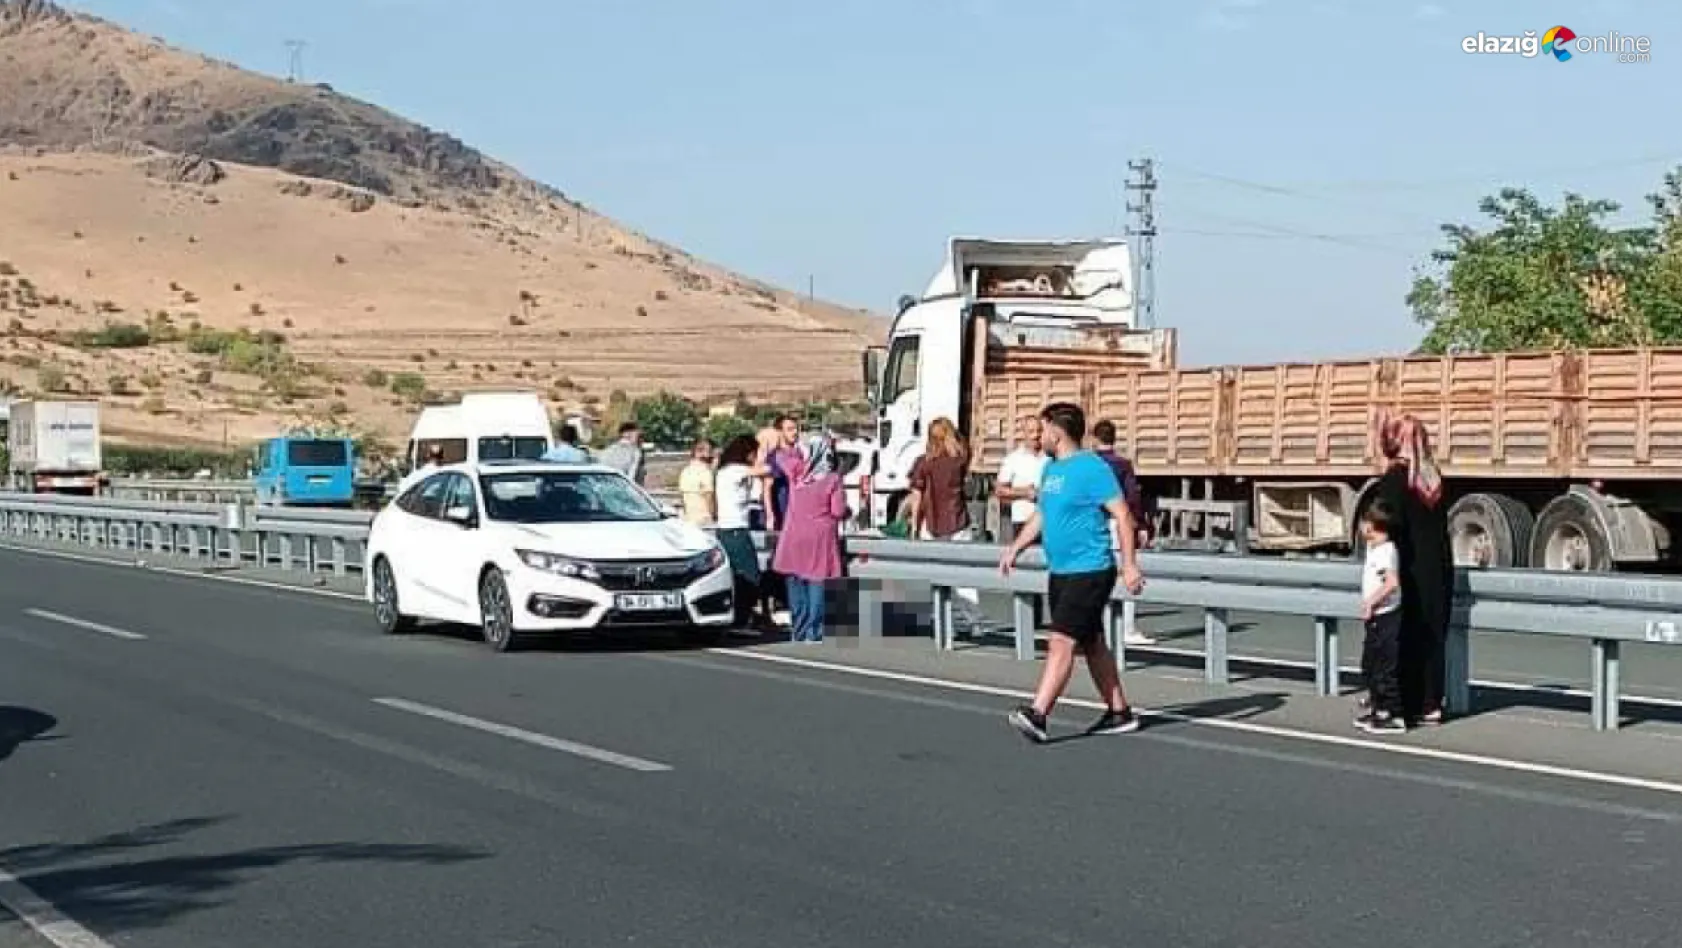 Elazığ'da feci kaza! Talihsiz adam, olay yerinde hayatını kaybetti